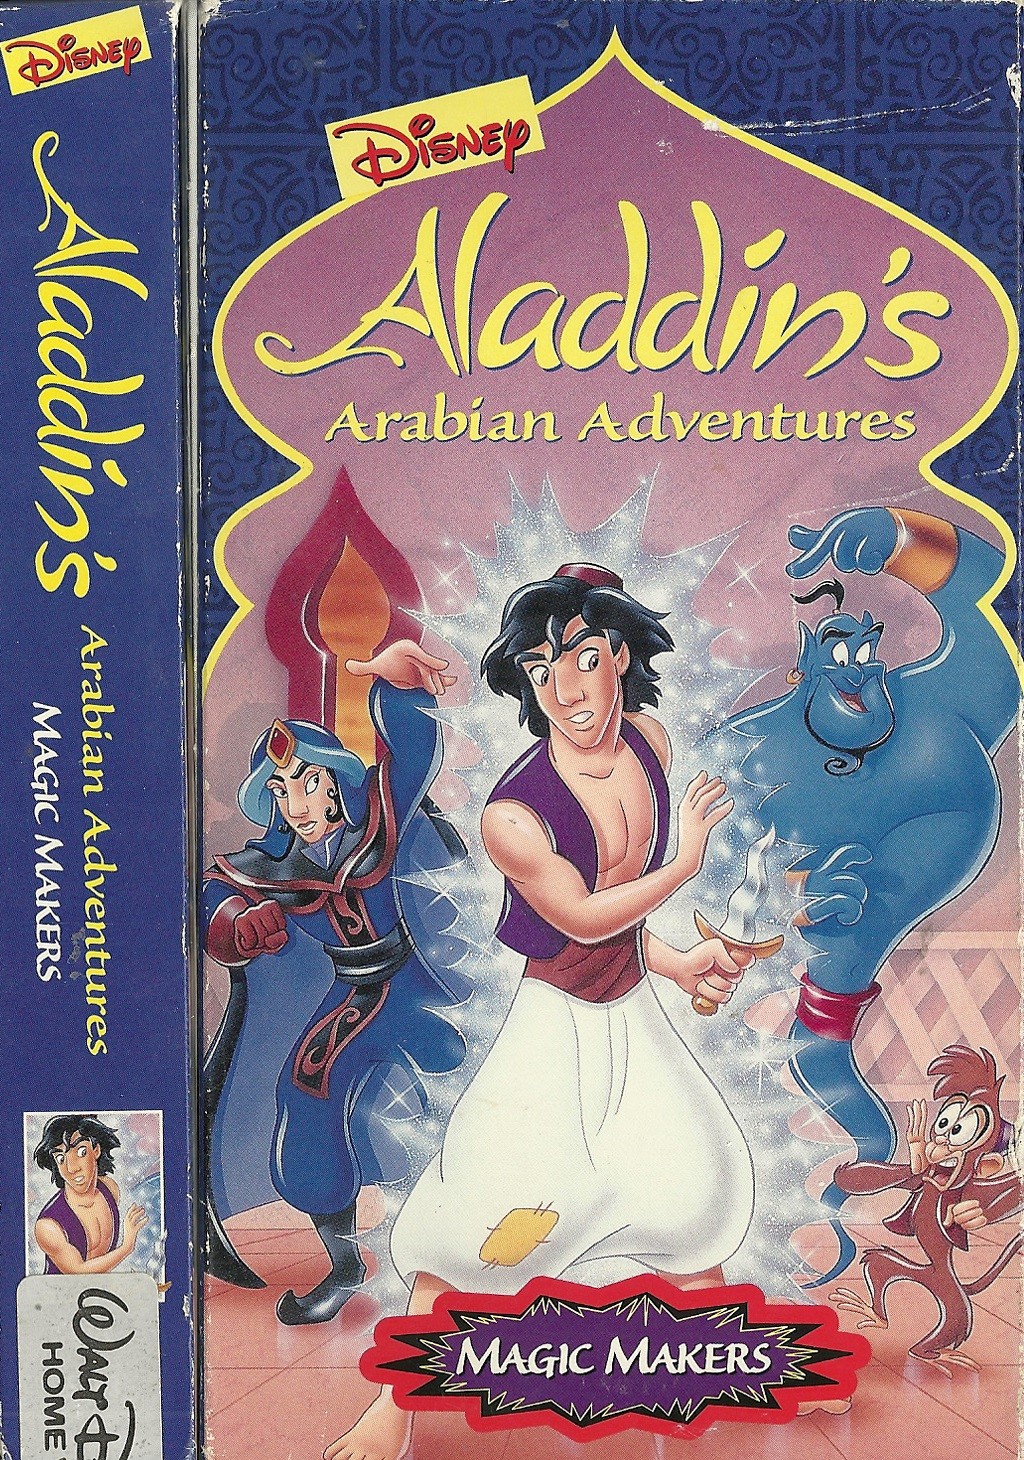 Арабские приключения Аладдина: Маги / Aladdin`s Arabian Adventures: Magic Makers (1995) отзывы. Рецензии. Новости кино. Актеры фильма Арабские приключения Аладдина: Маги. Отзывы о фильме Арабские приключения Аладдина: Маги